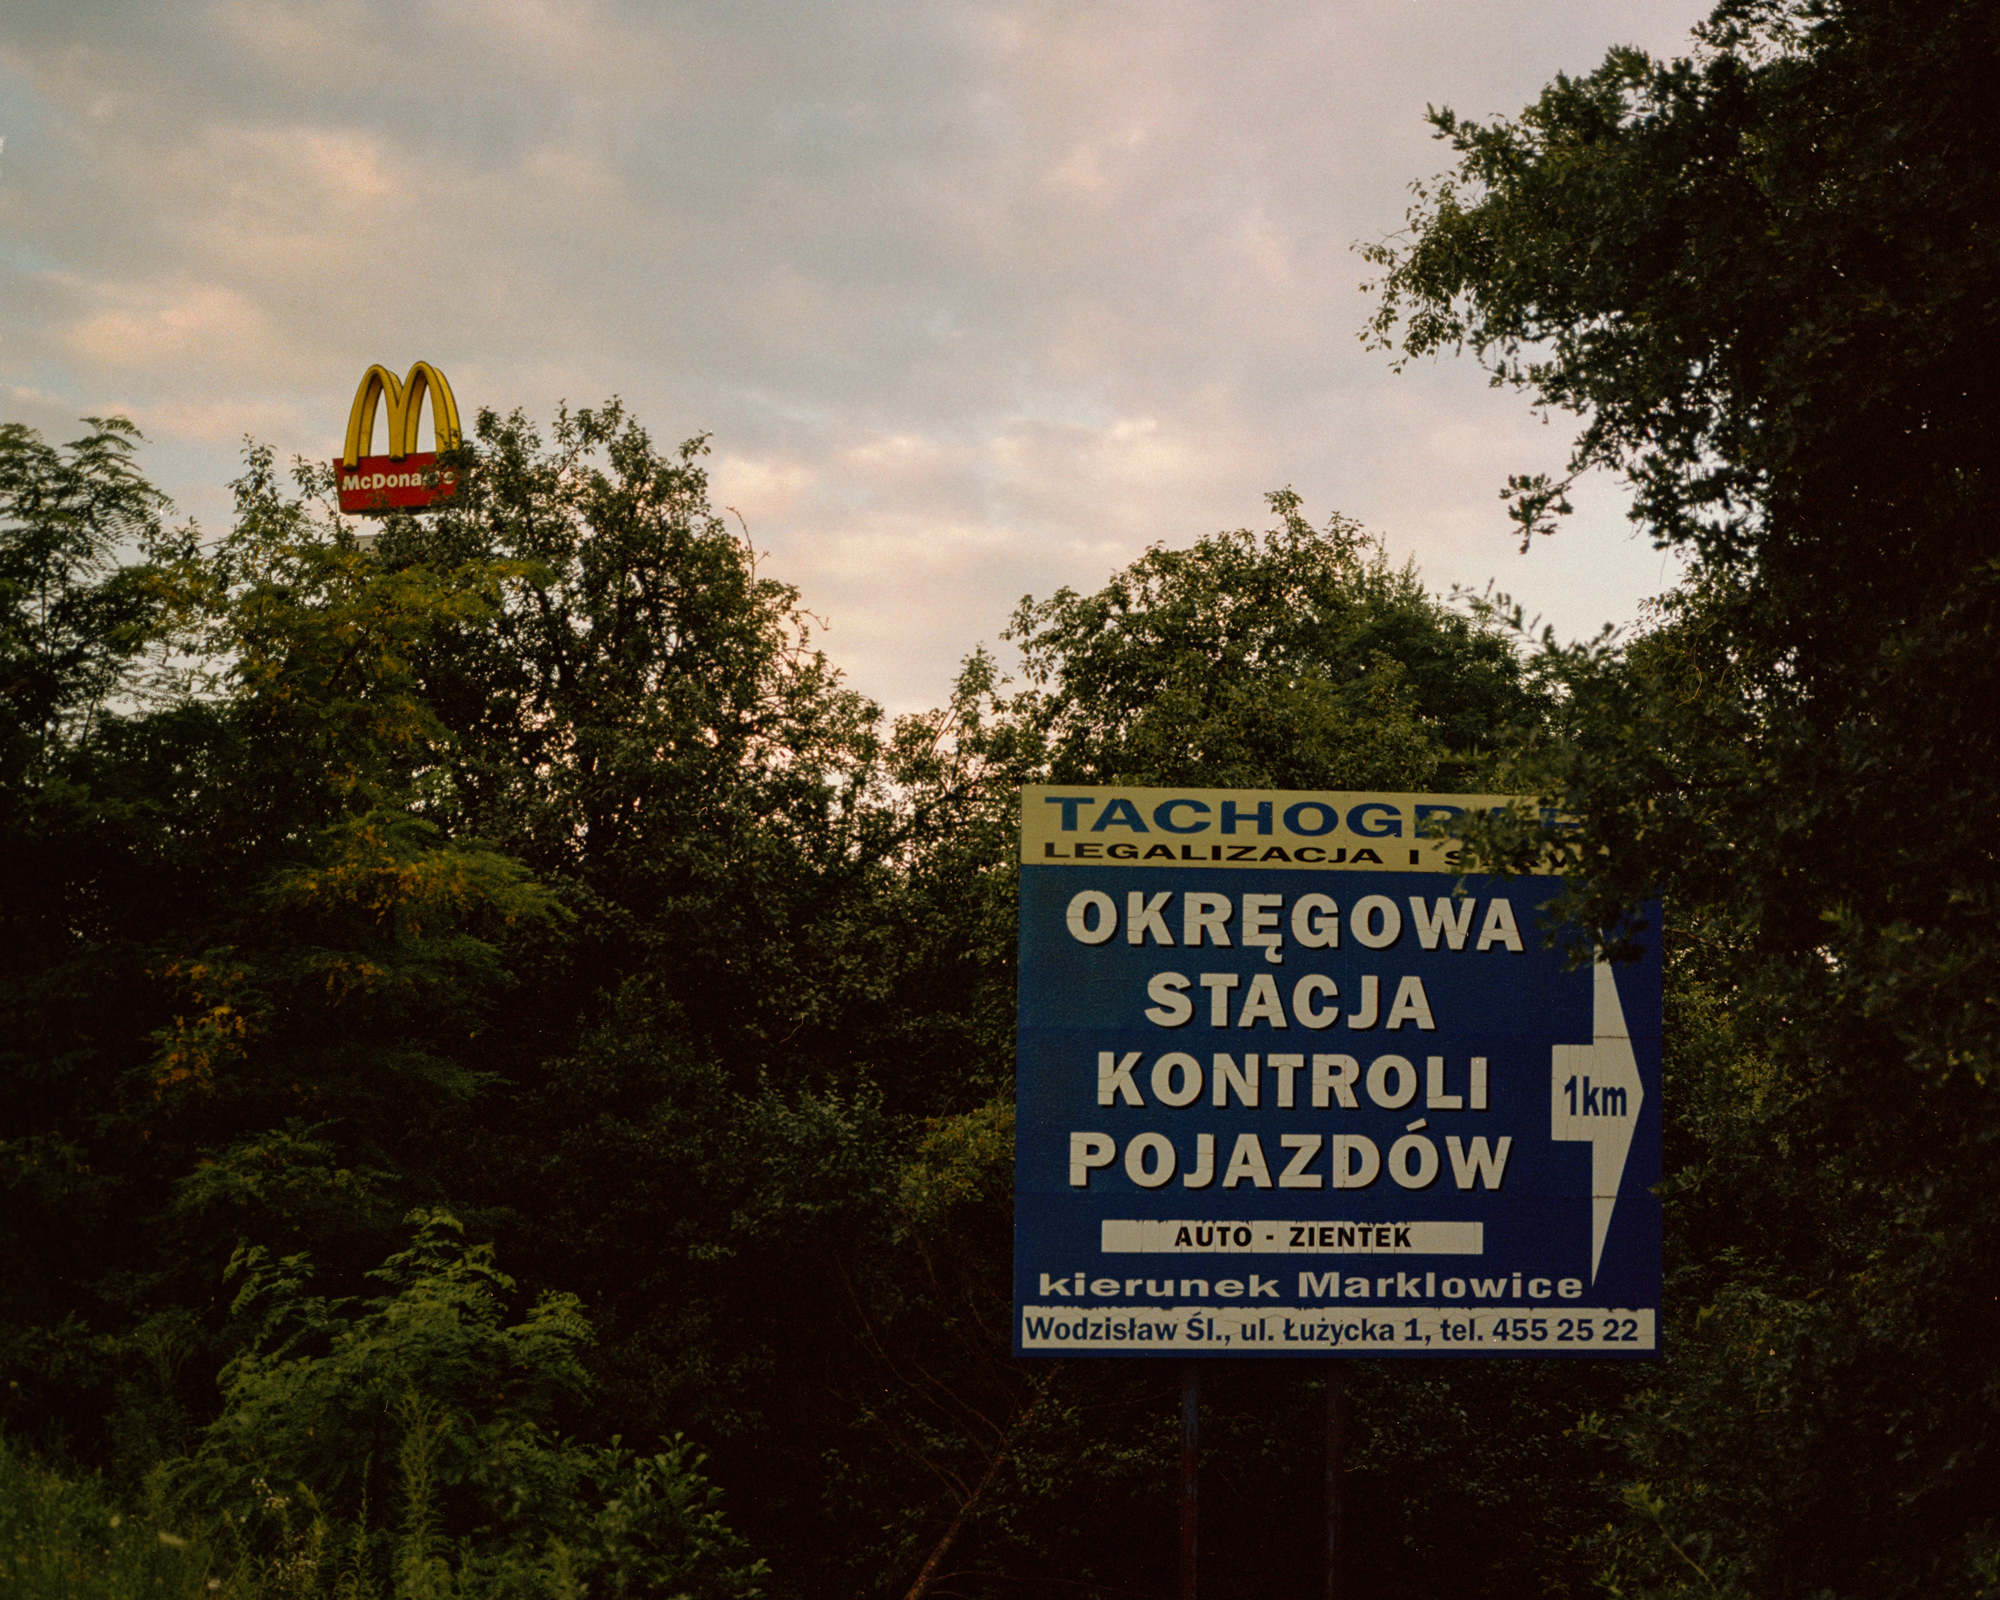 Wodzislaw, 2016